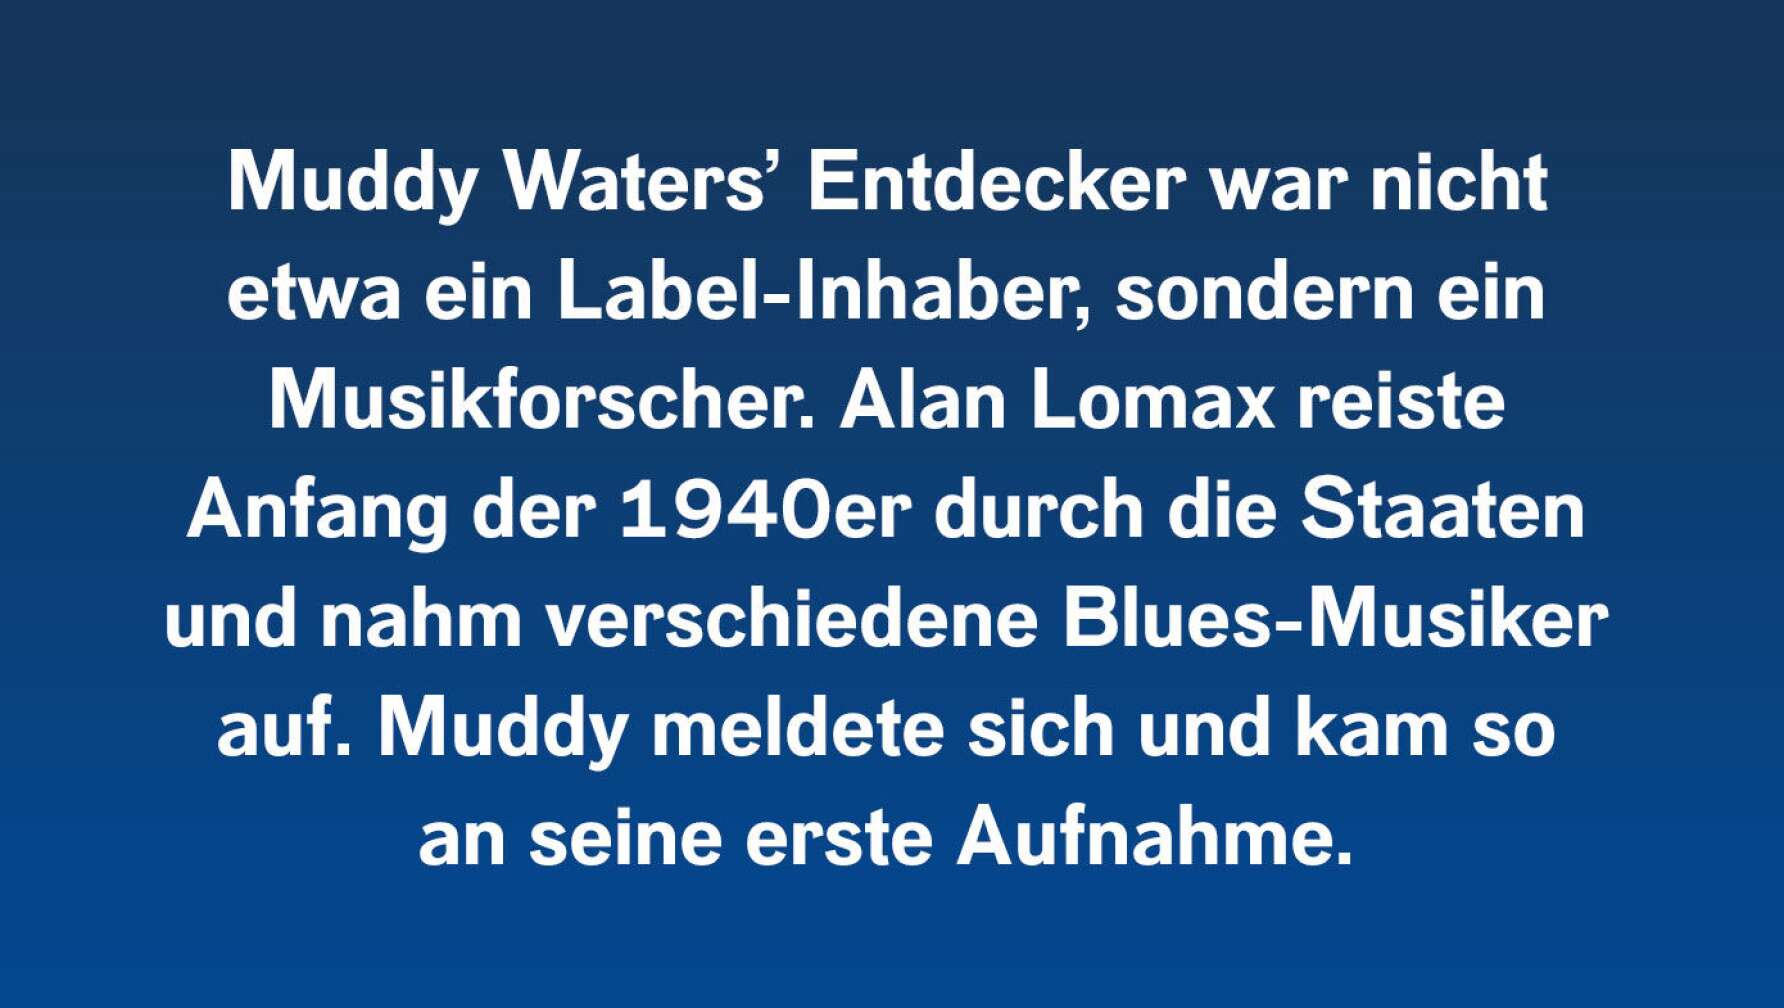 6 Fakten über Muddy Waters #6